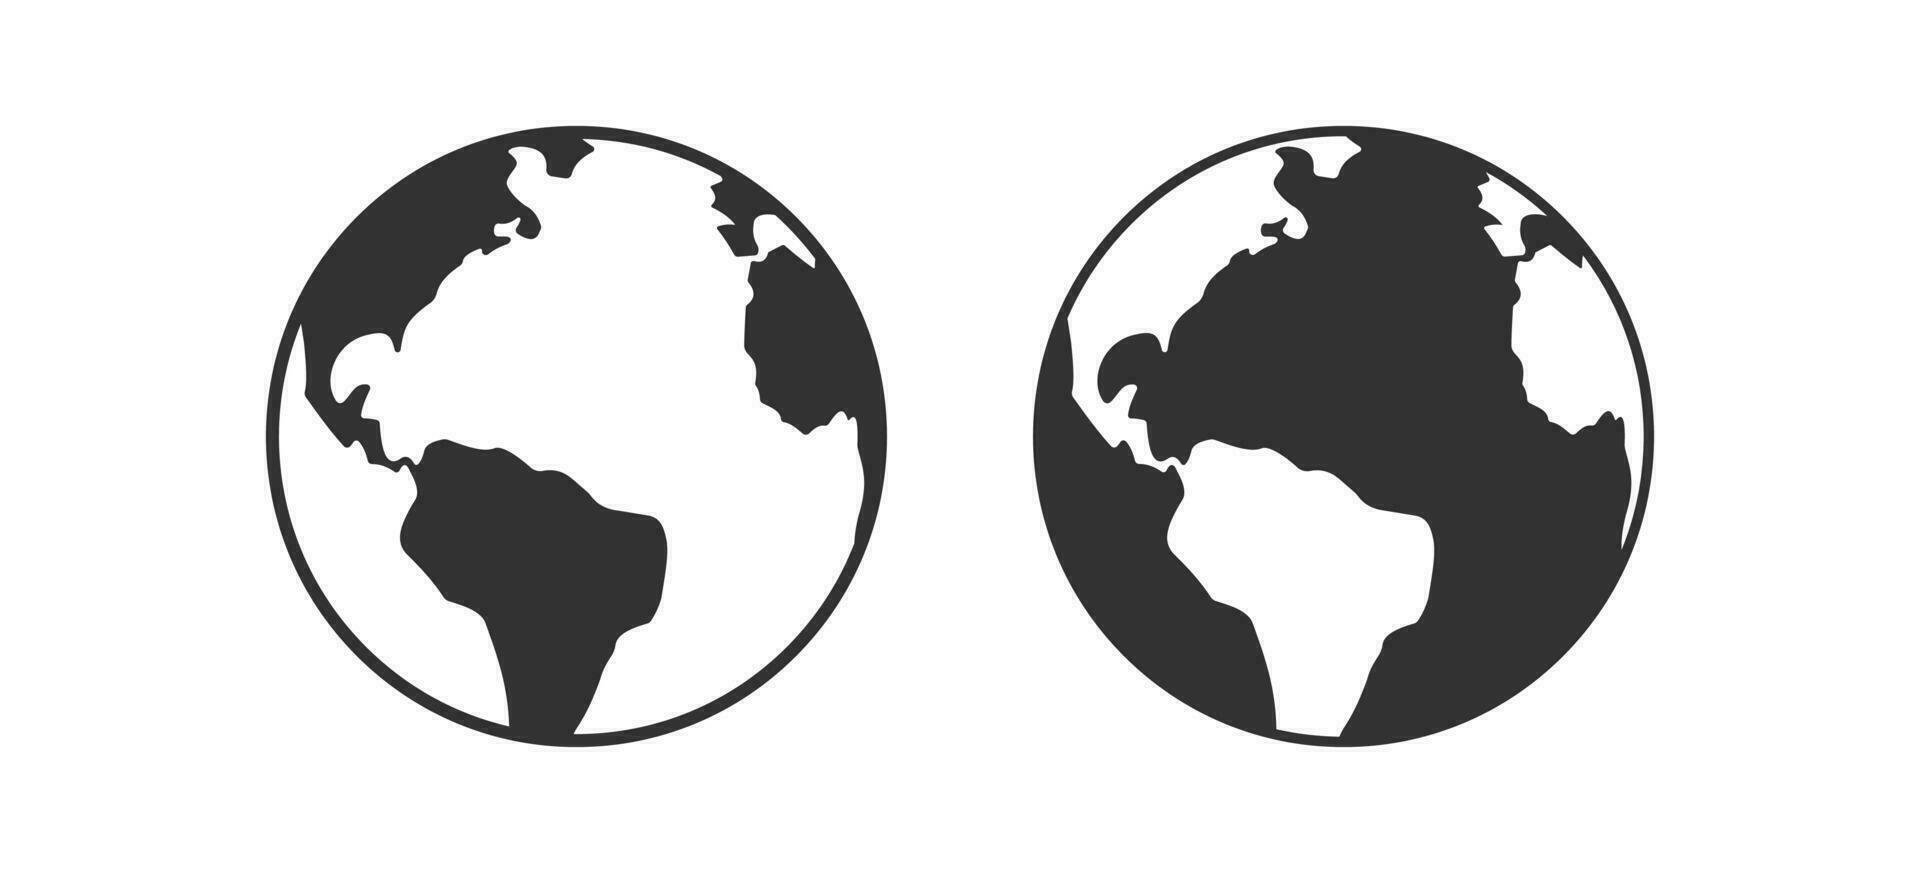 klot ikon. jord tecken. värld symbol. planet symboler. global sfär ikoner. svart Färg. vektor isolerat tecken.